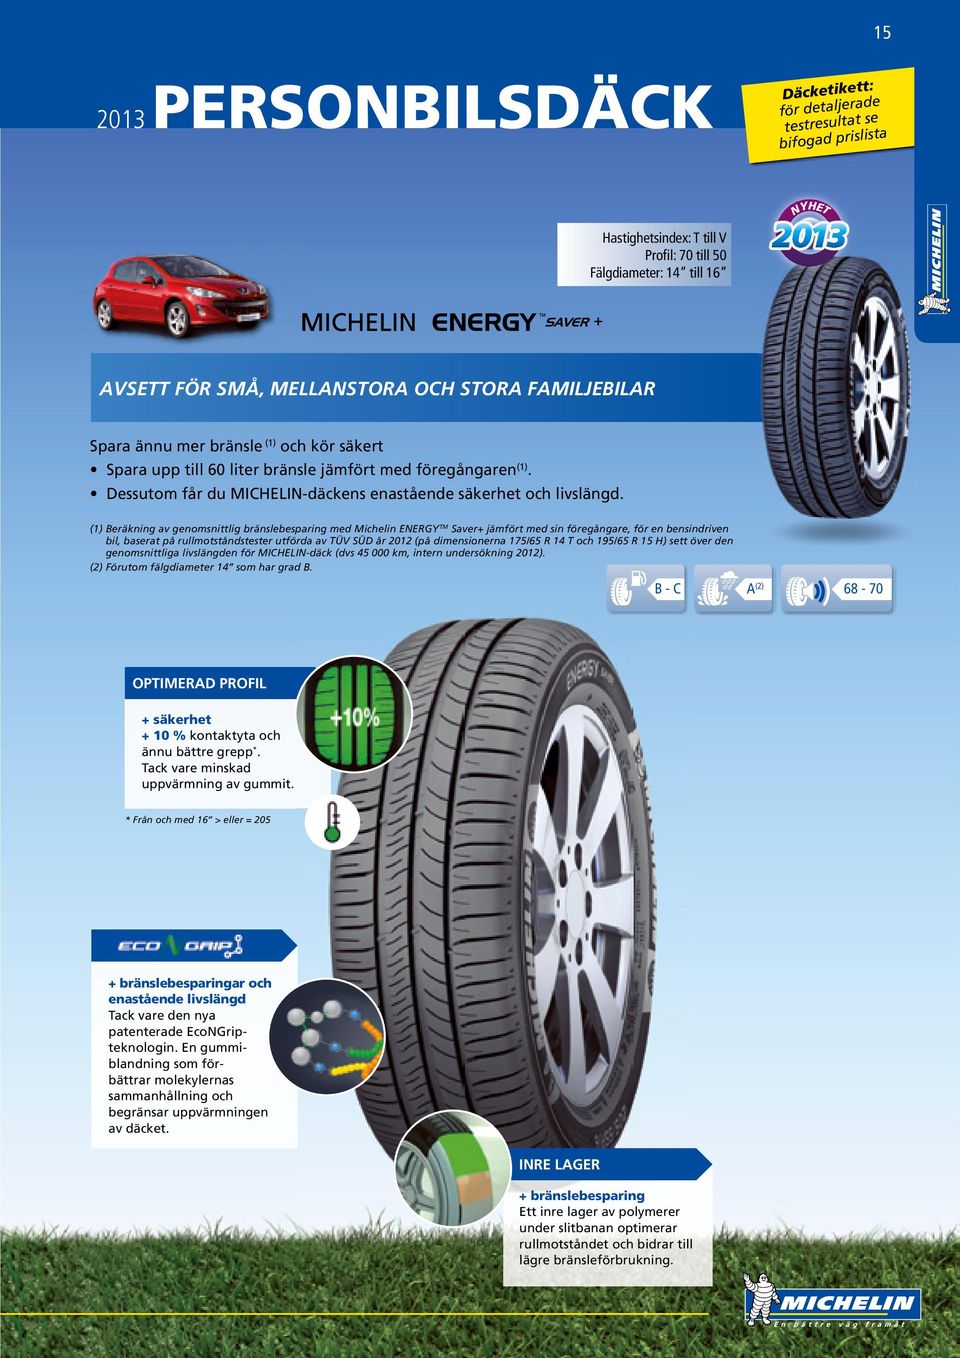 (1) Beräkning av genomsnittlig bränslebesparing med Michelin ENERGY TM Saver+ jämfört med sin föregångare, för en bensindriven bil, baserat på rullmotståndstester utförda av TÜV SÜD år 2012 (på